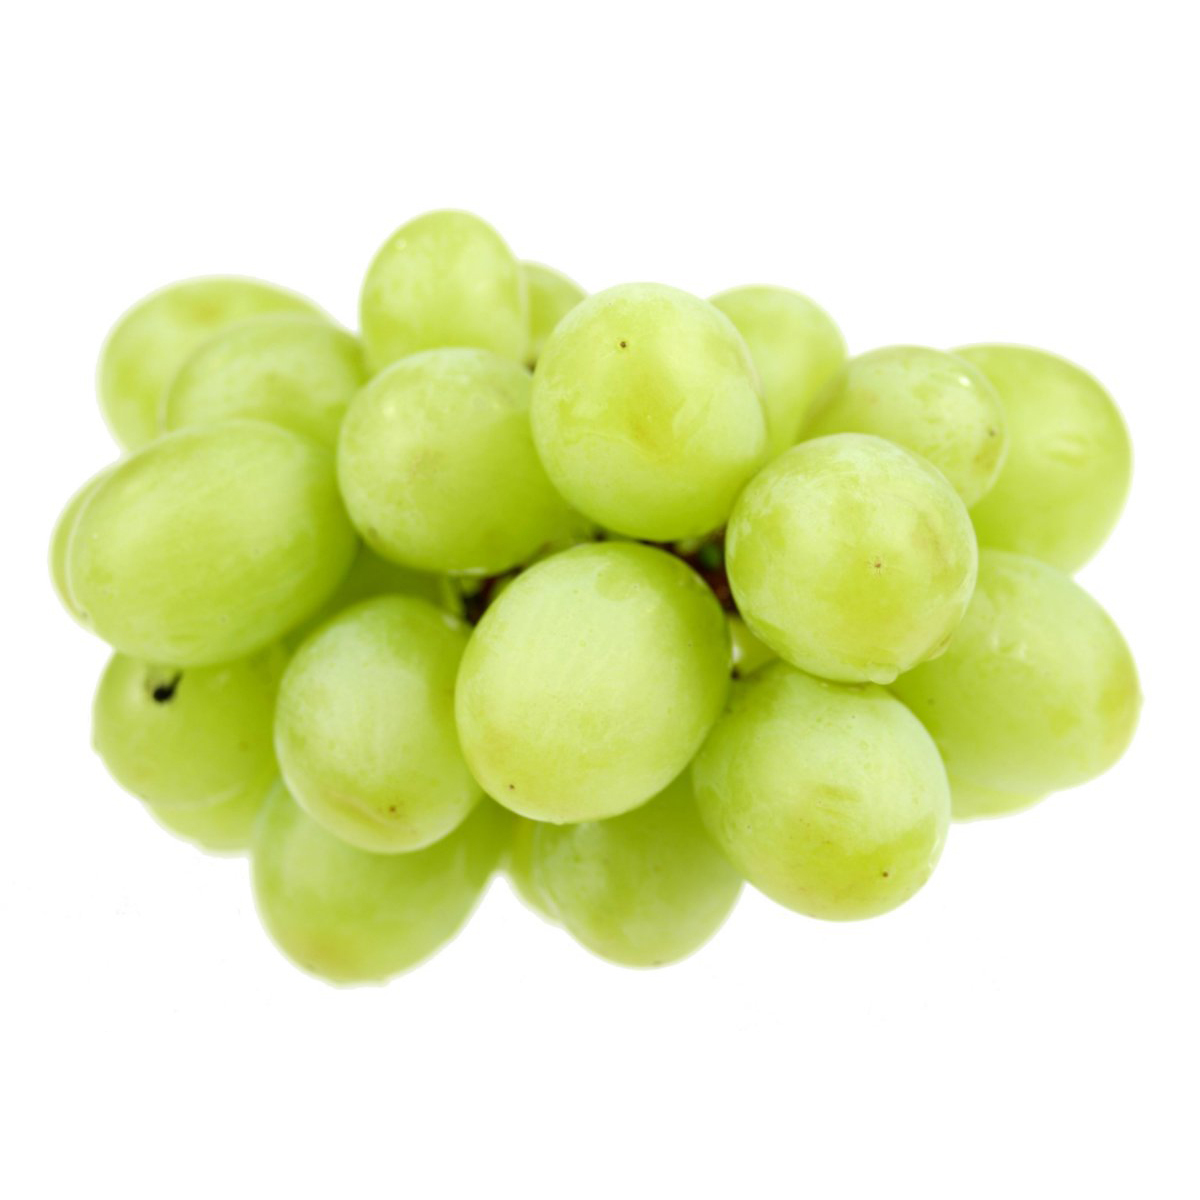 Organic Seedless Green Grapes 500g - AUS*